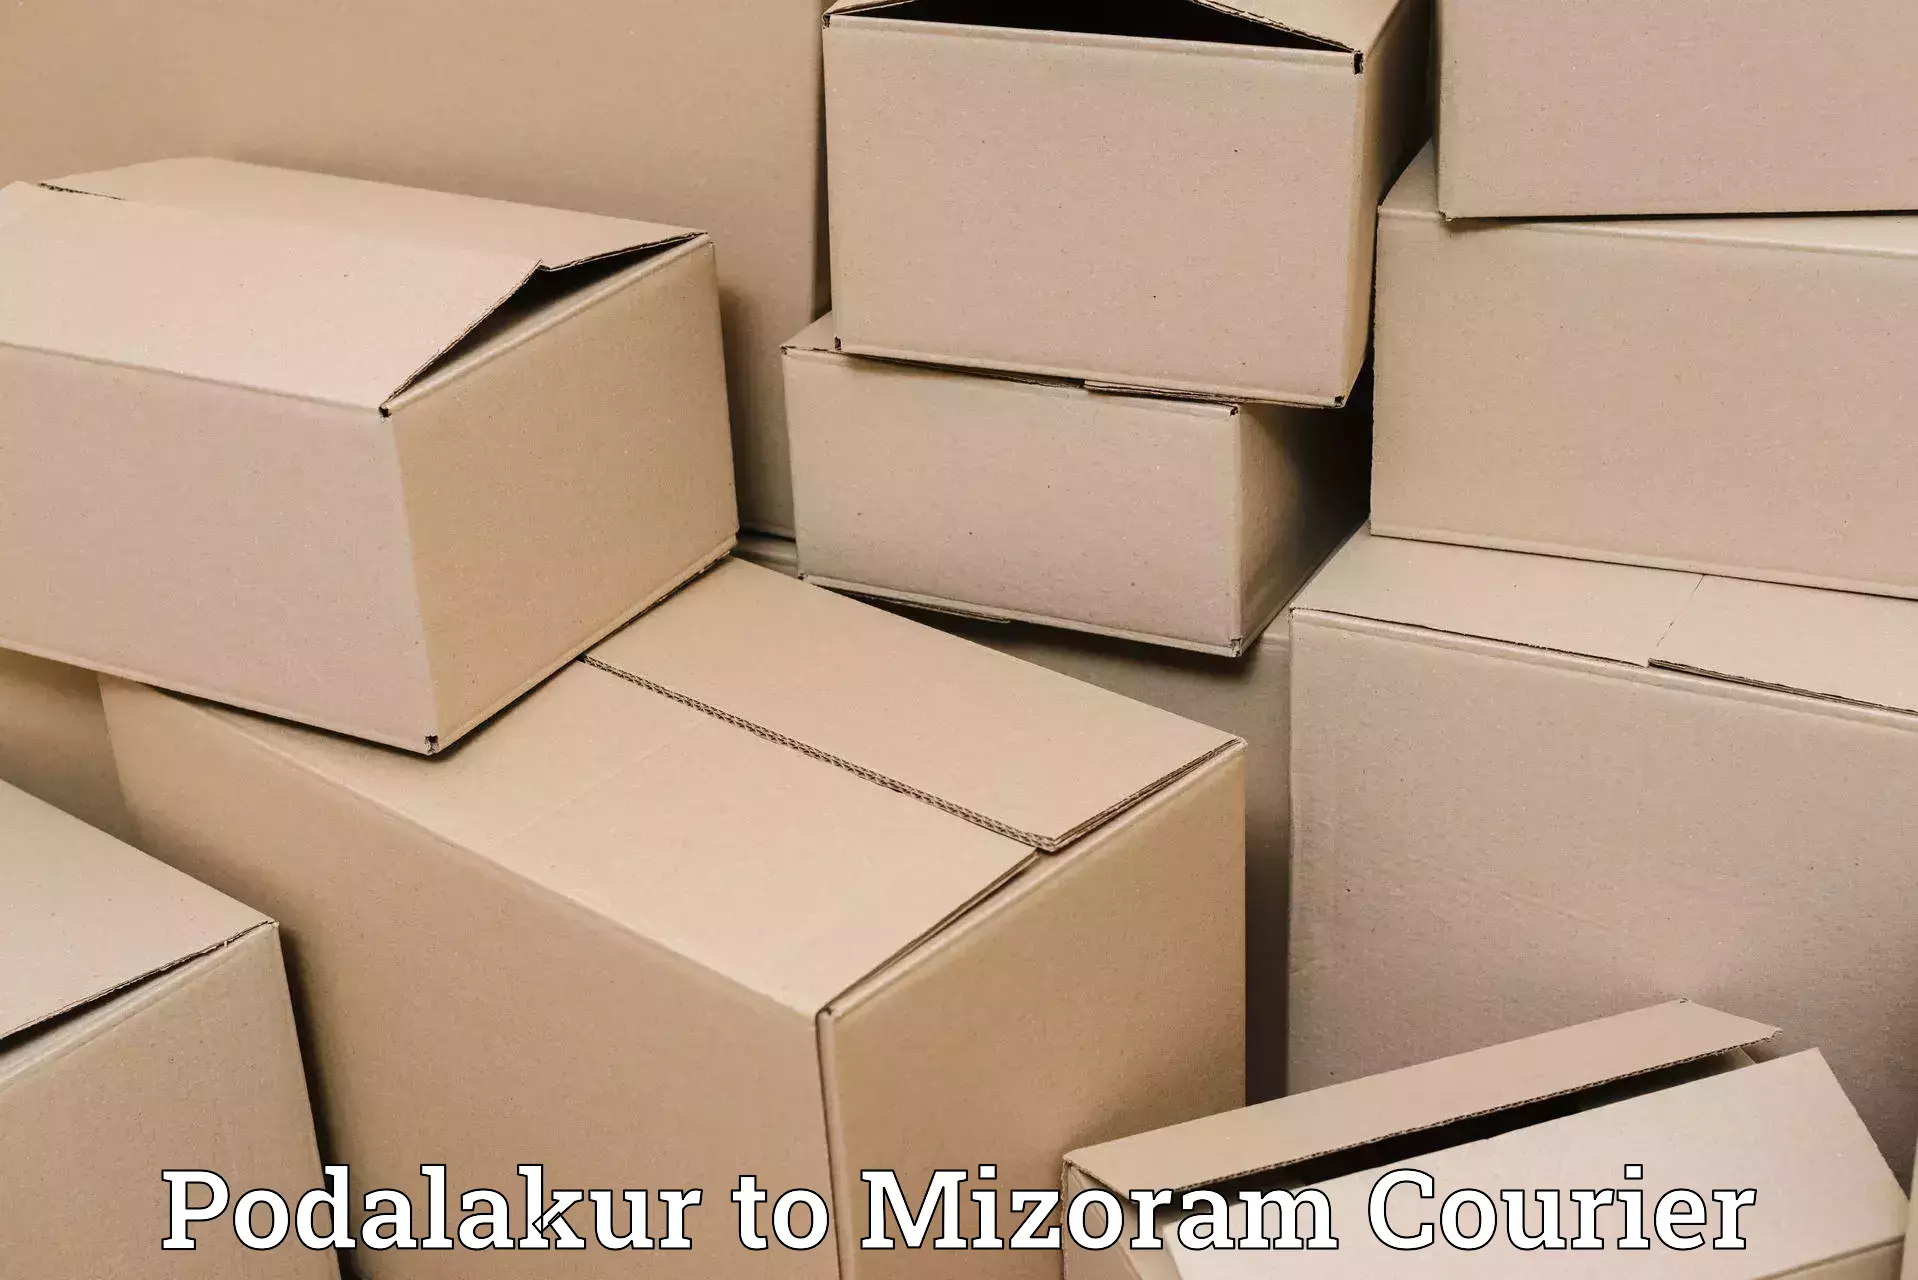 Luggage transfer service Podalakur to Mizoram